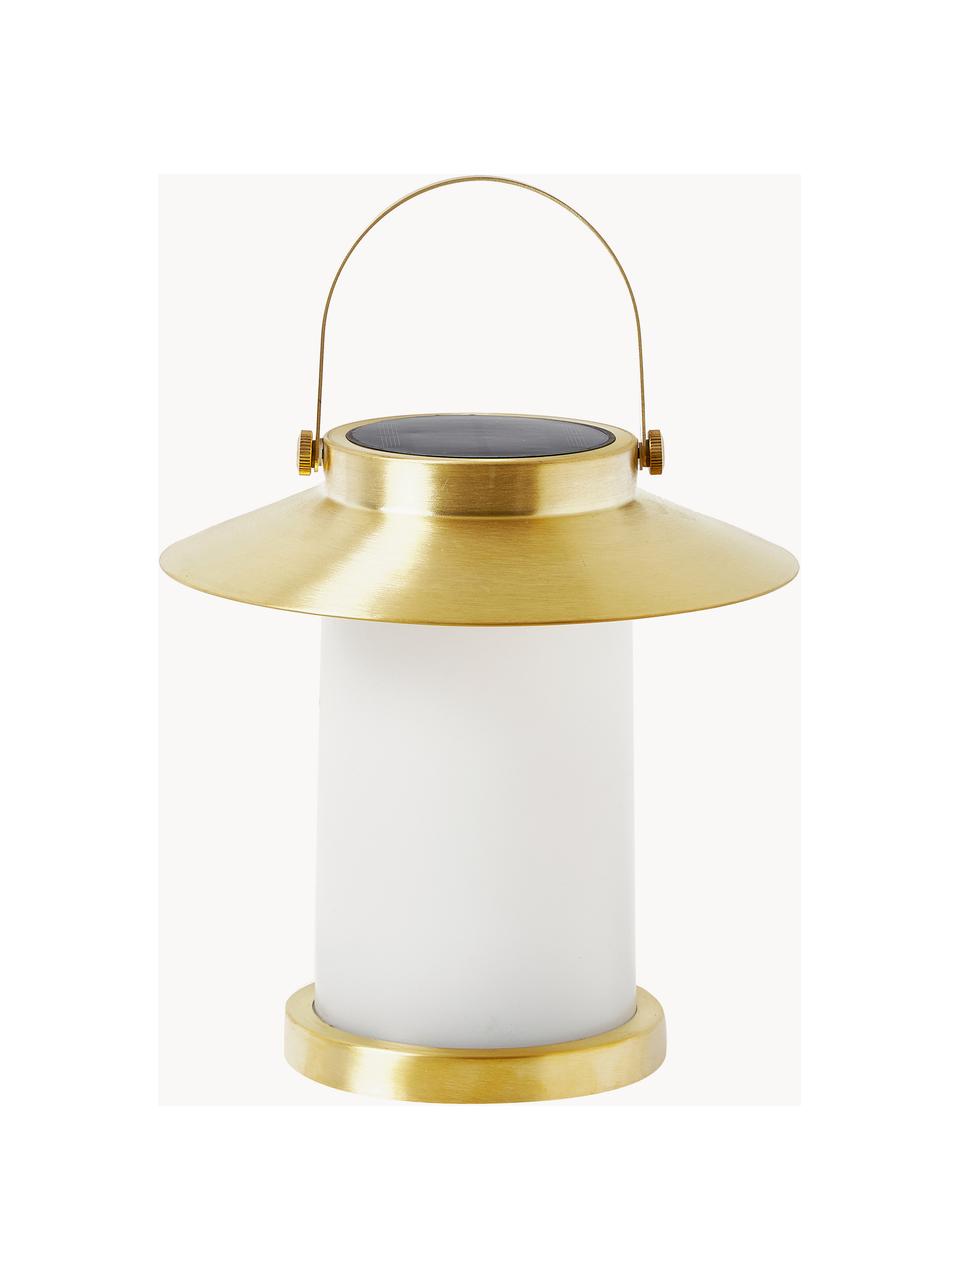 Mobile dimmbare Außentischlampe, Goldfarben, Weiß, Ø 23 x H 22 cm